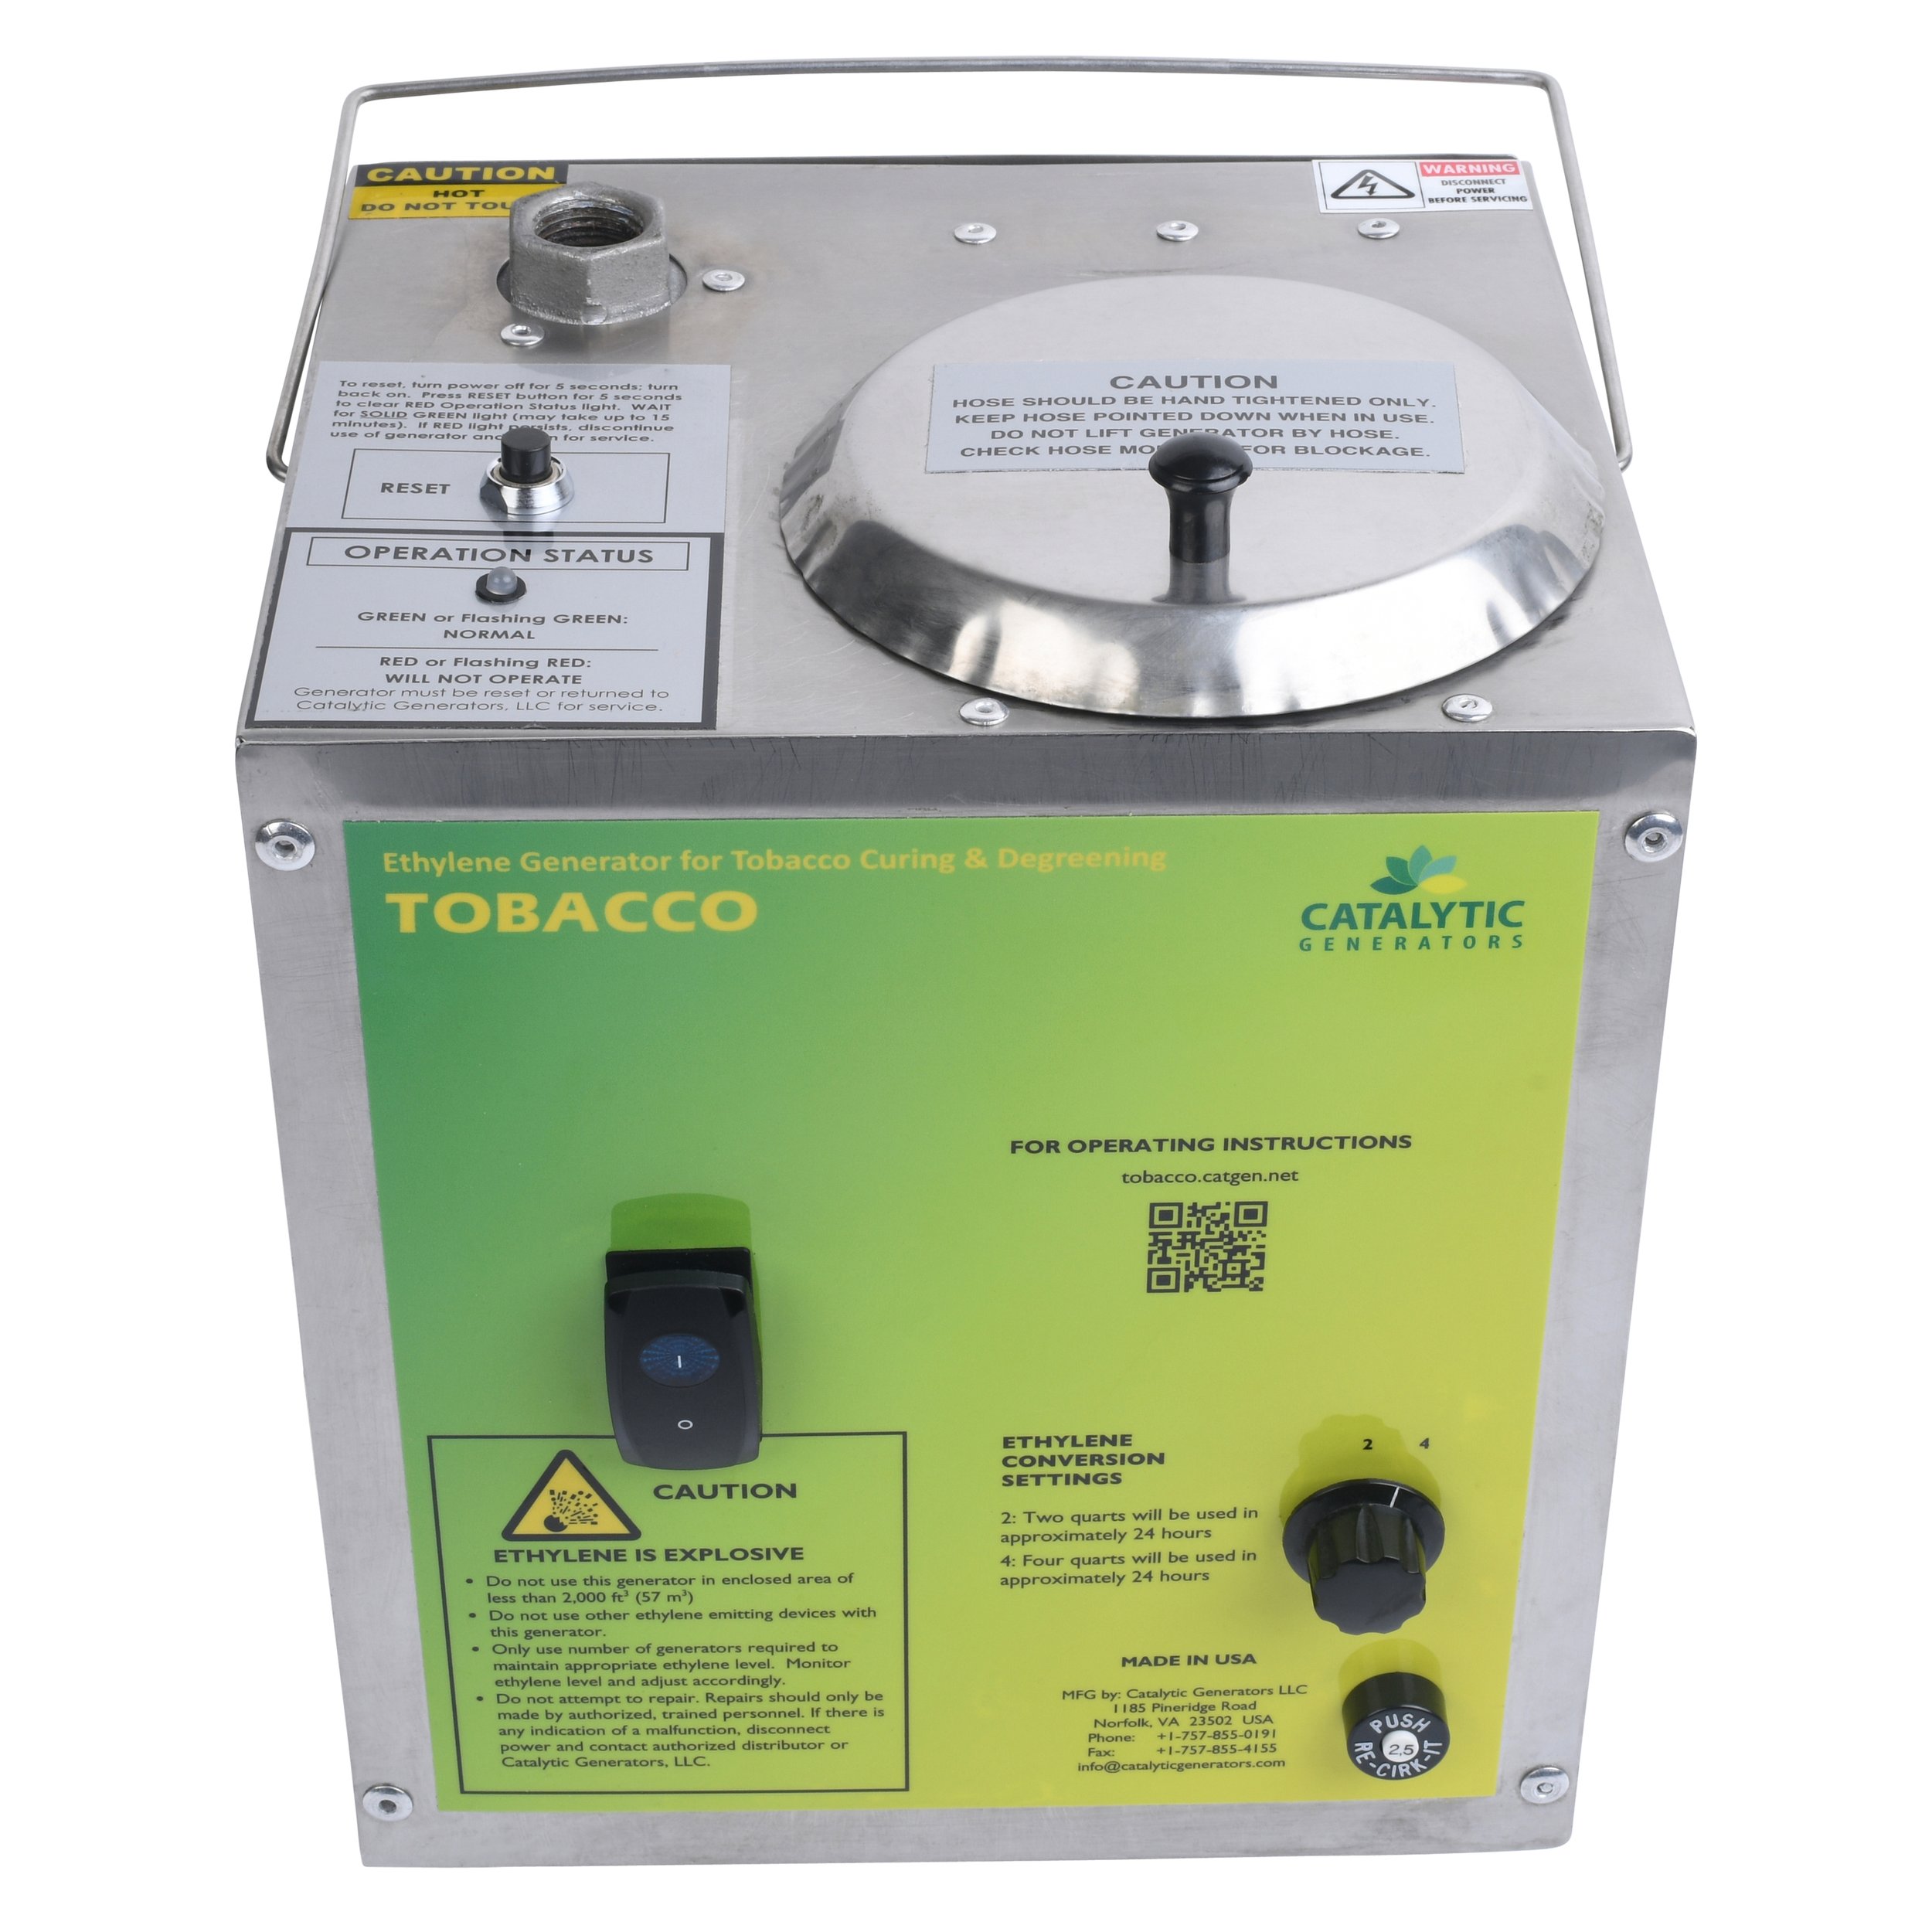 Generador de etileno para el curado del tabaco